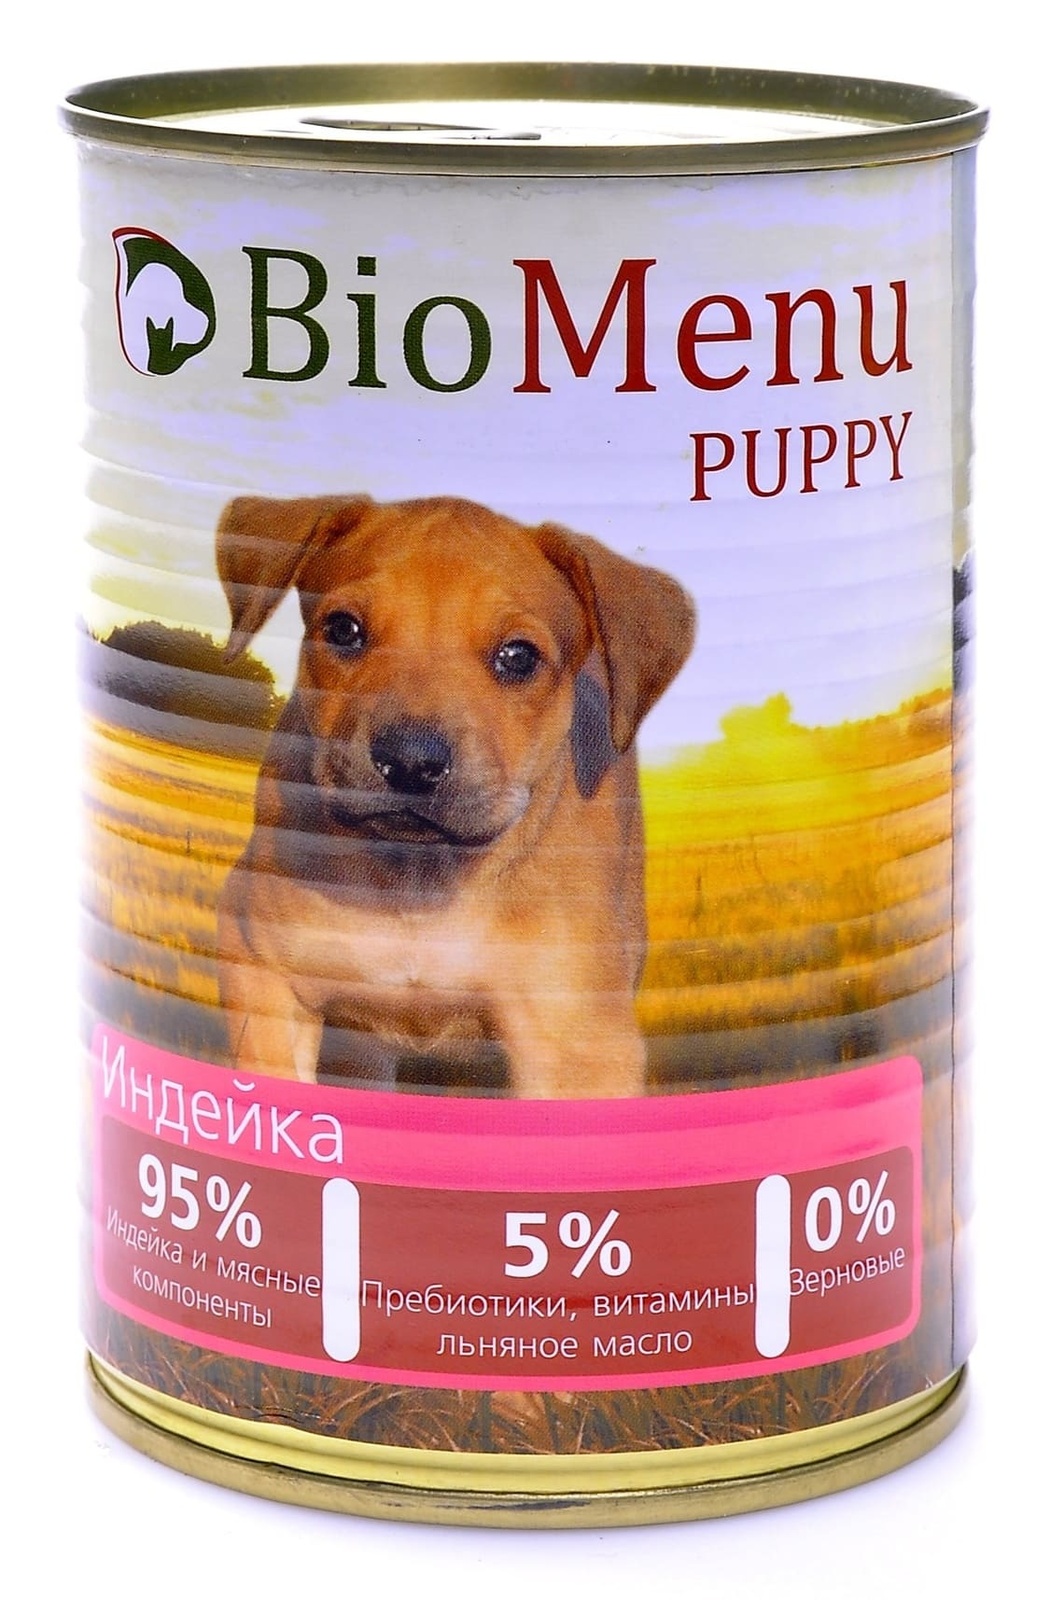 BioMenu BioMenu консервы для щенков индейка (100 г) biomenu biomenu консервы для собак цыпленок с ананасом 100 г